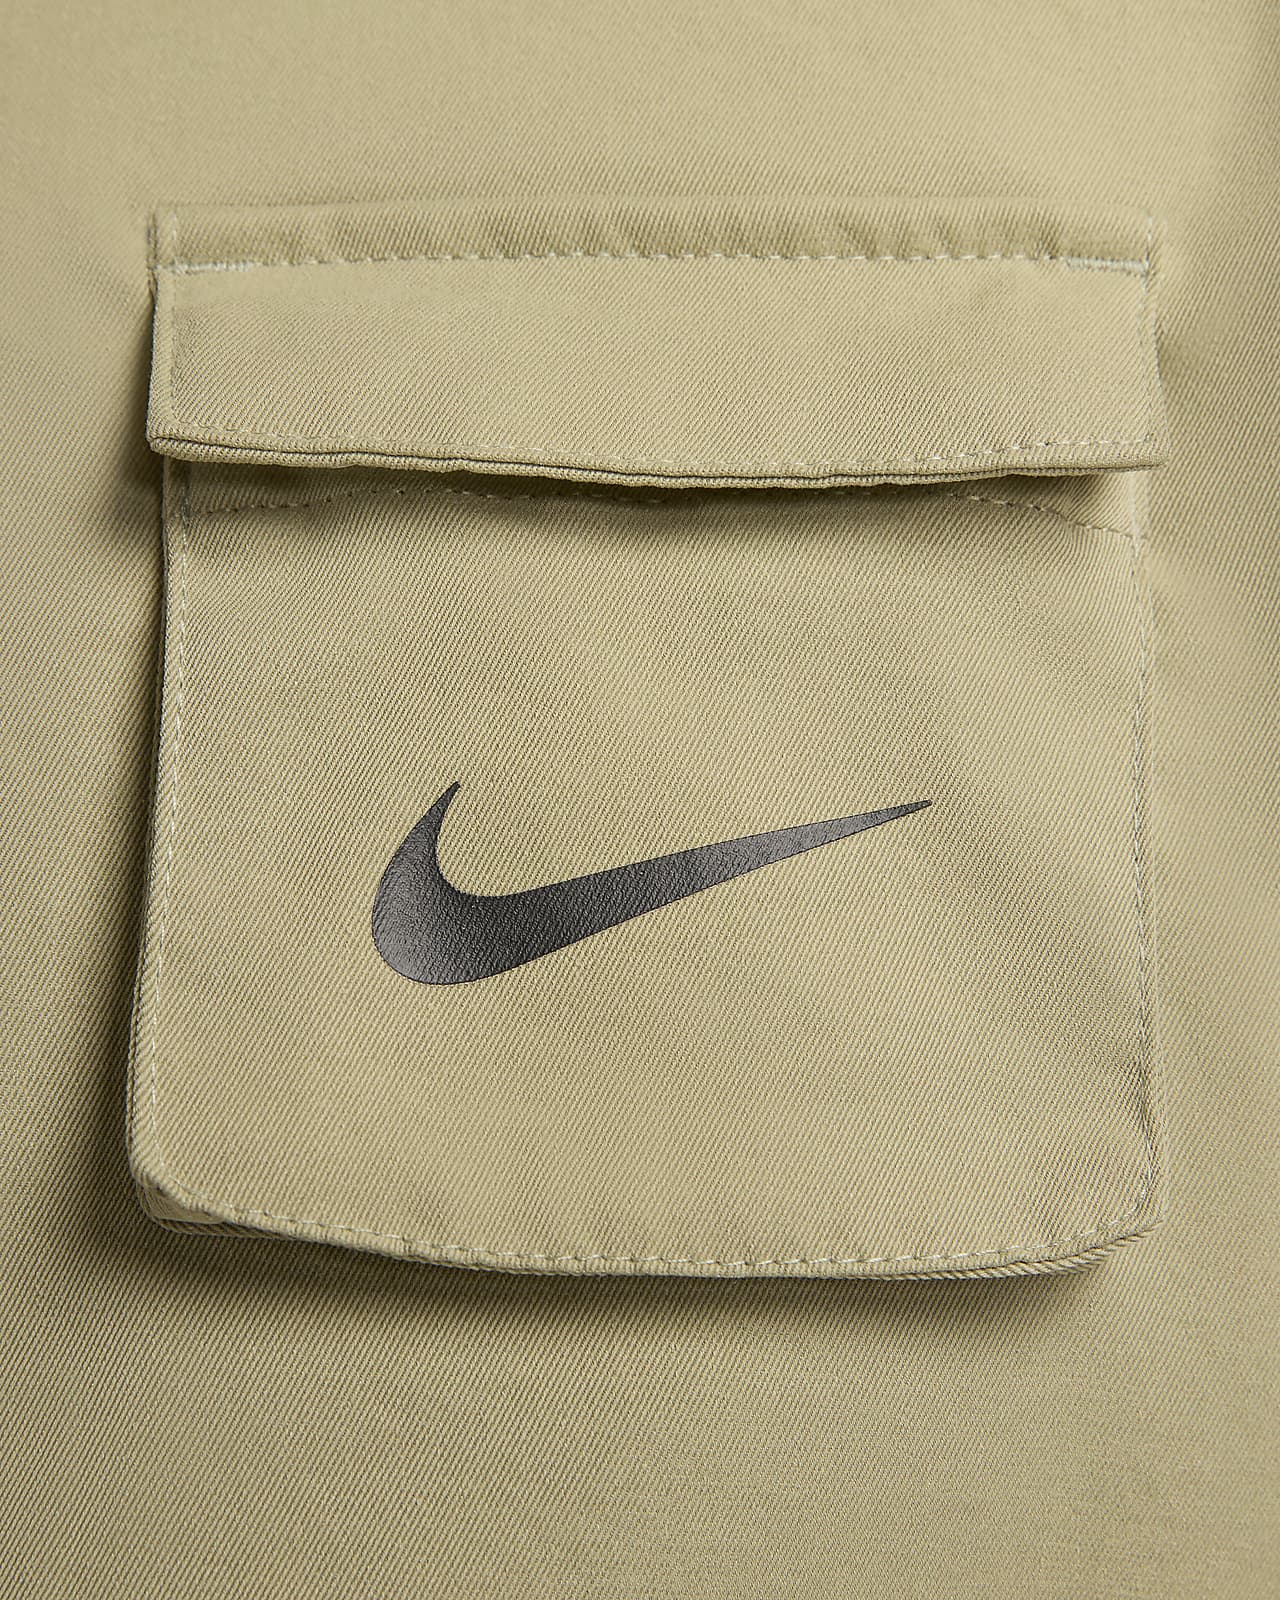 Gedachte Bedankt functie Nike Sportswear Swoosh Women's Woven Jacket. Nike.com